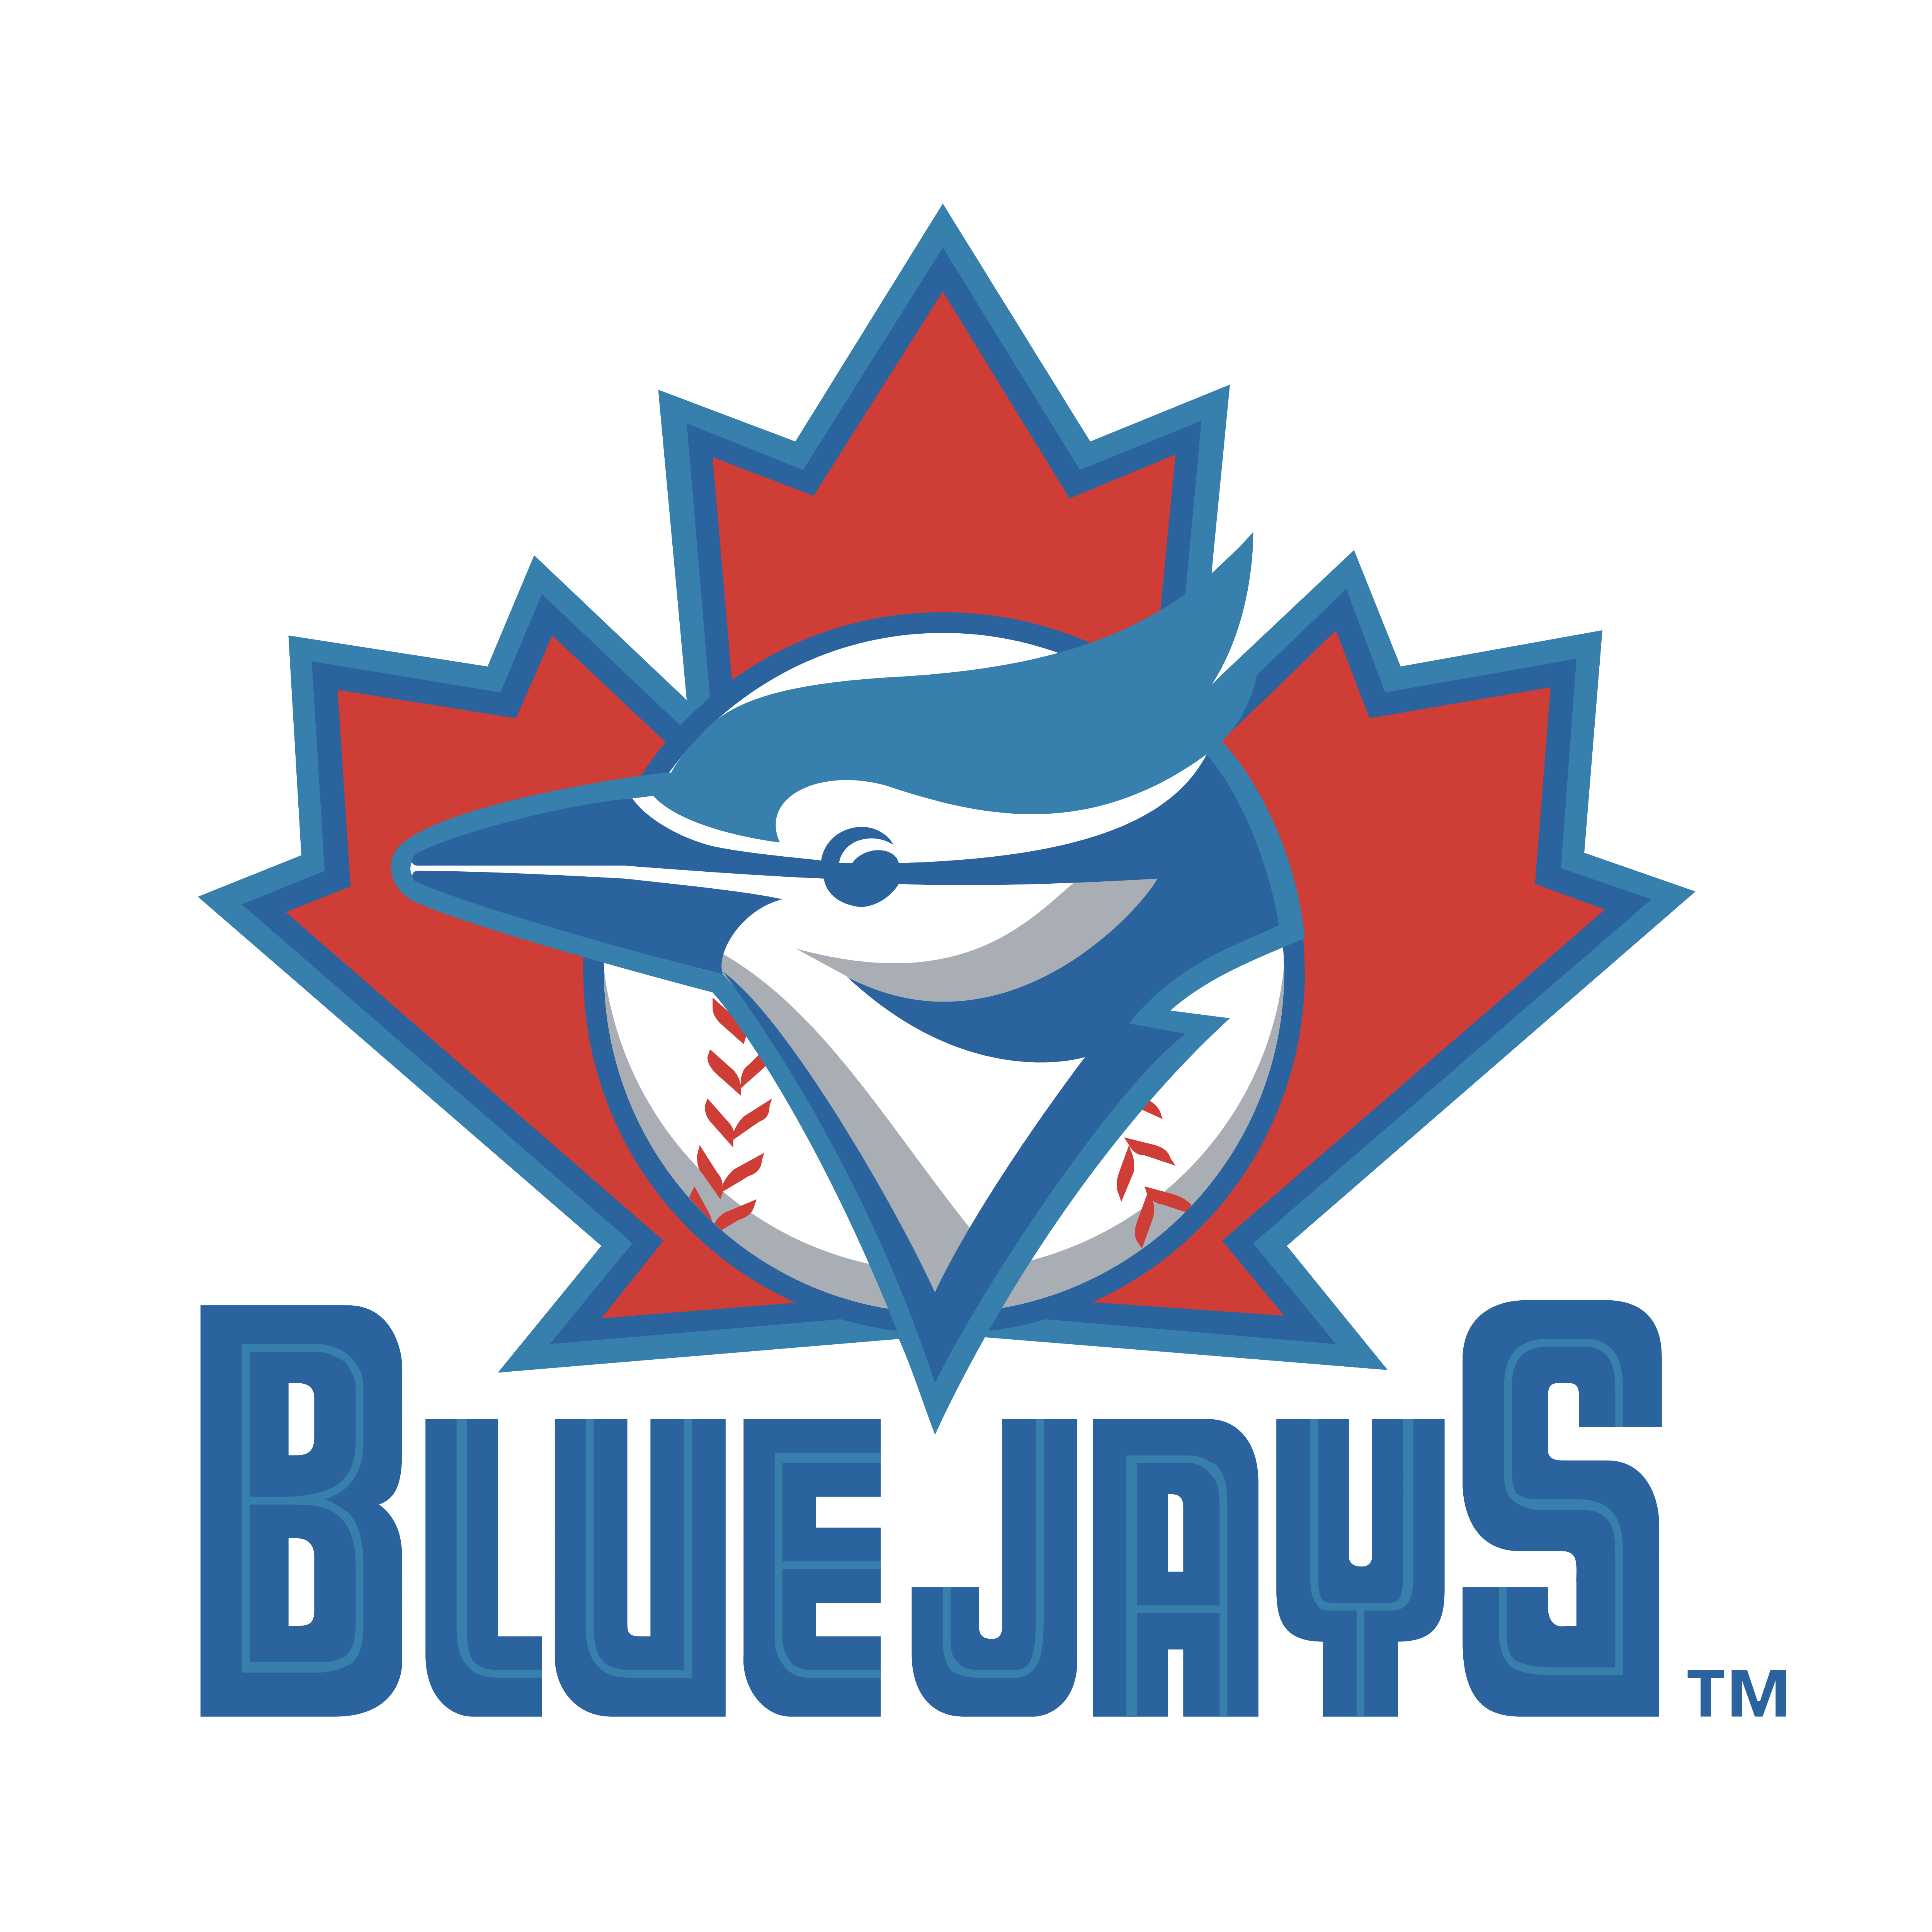 Toronto Blue Jays Logos Download